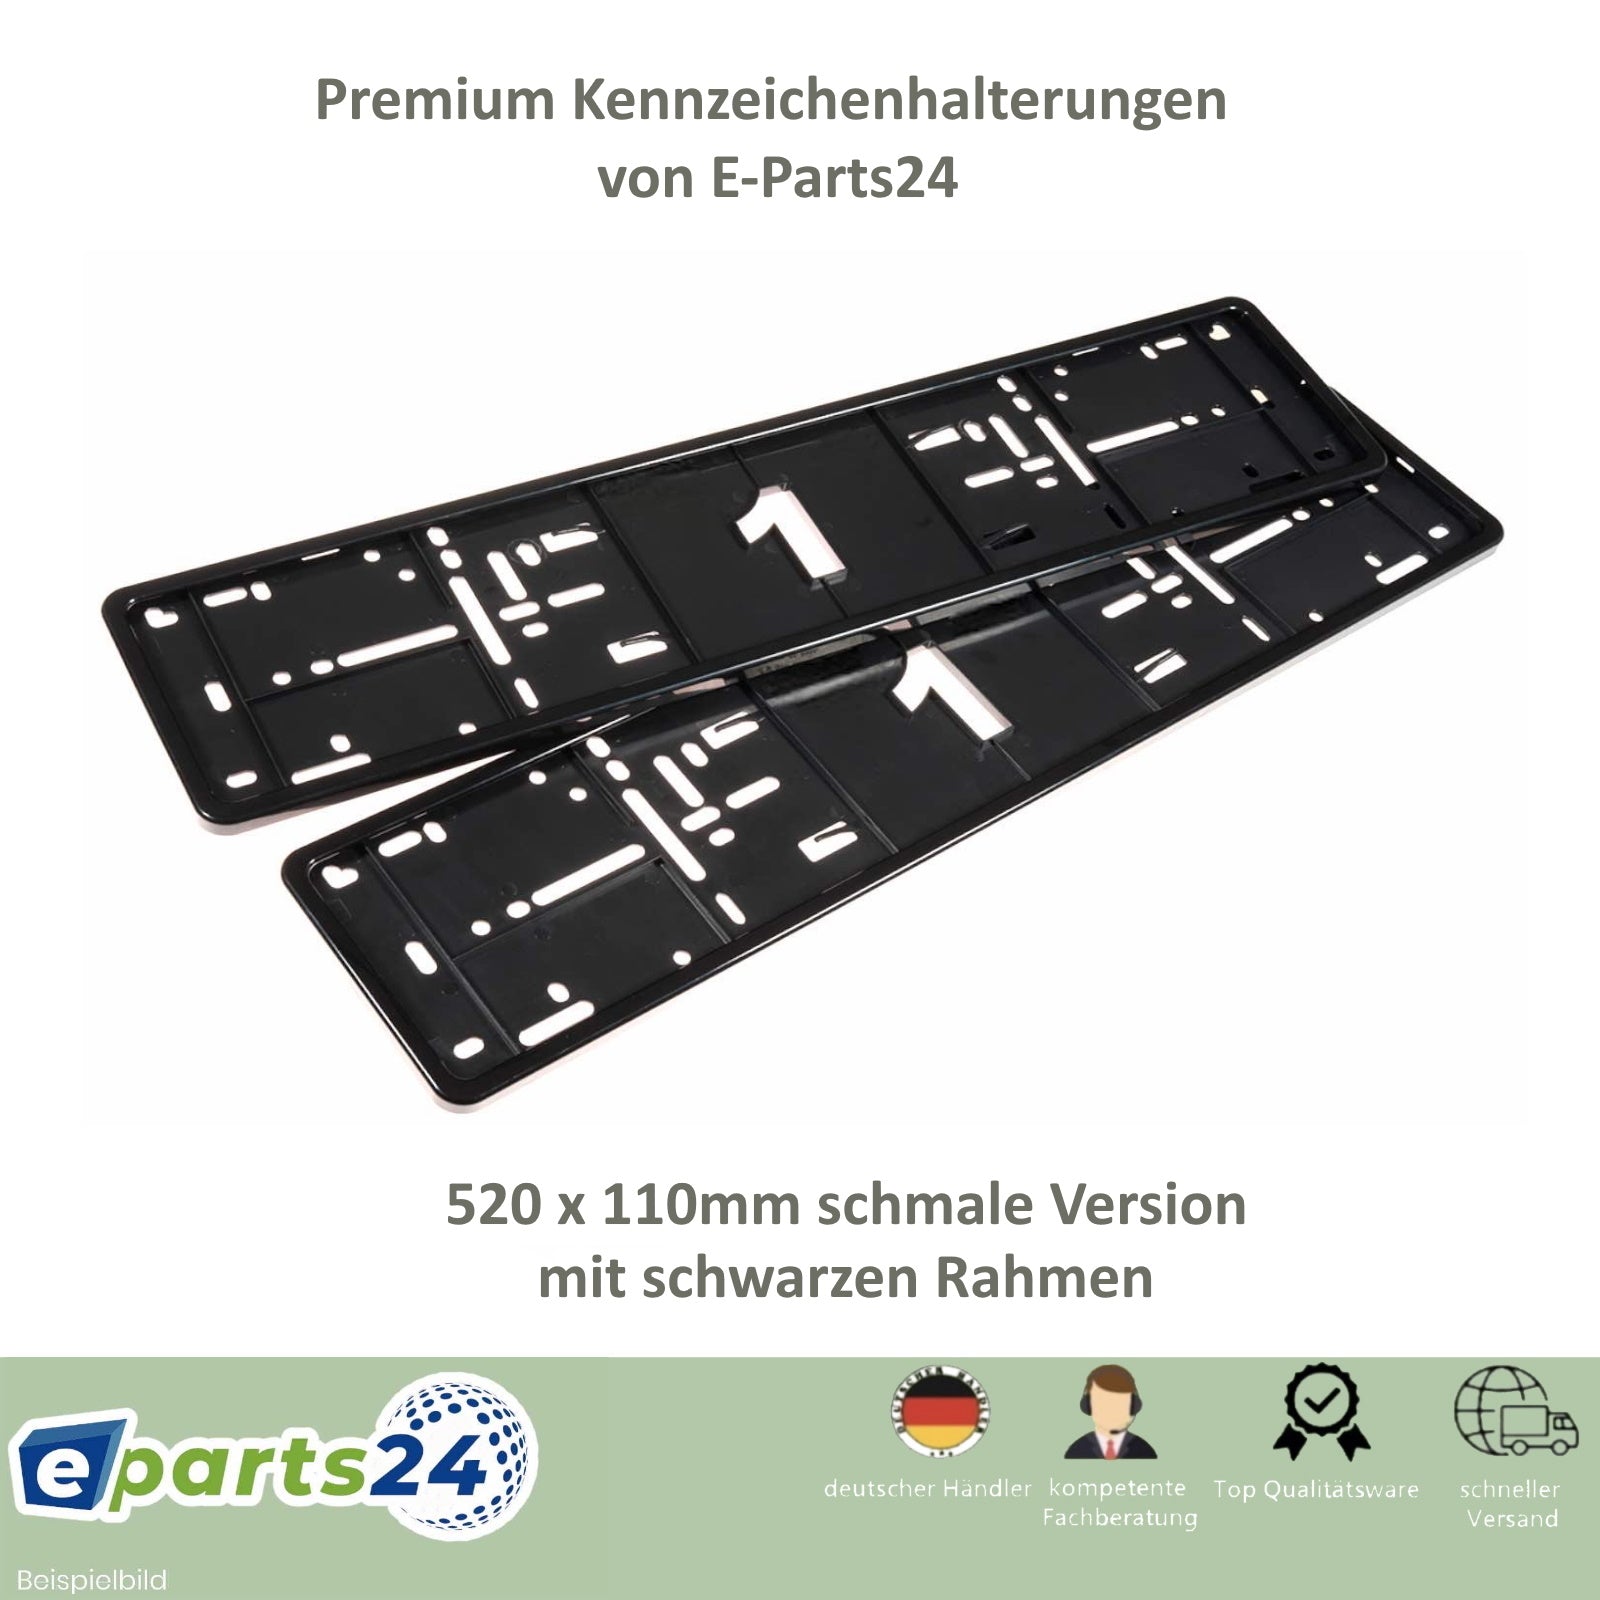 2x KFZ Kennzeichenhalter Nummernschildhalter 520x110mm schmale Version –  E-Parts24